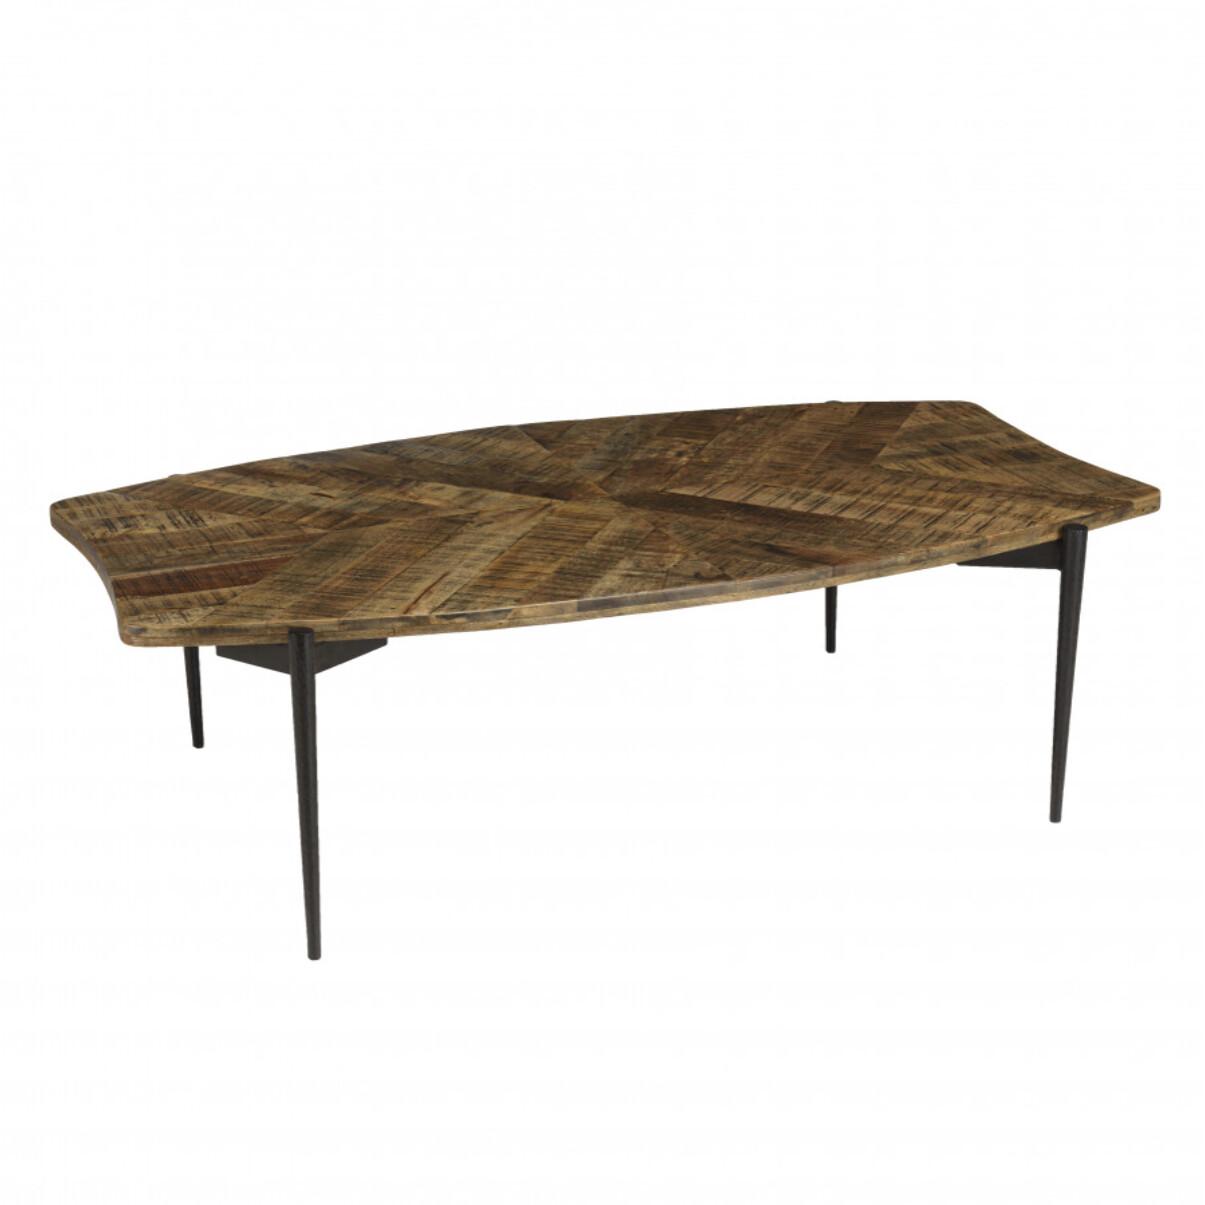 KIARA - Table basse bords concaves 135x75cm en bois recyclé